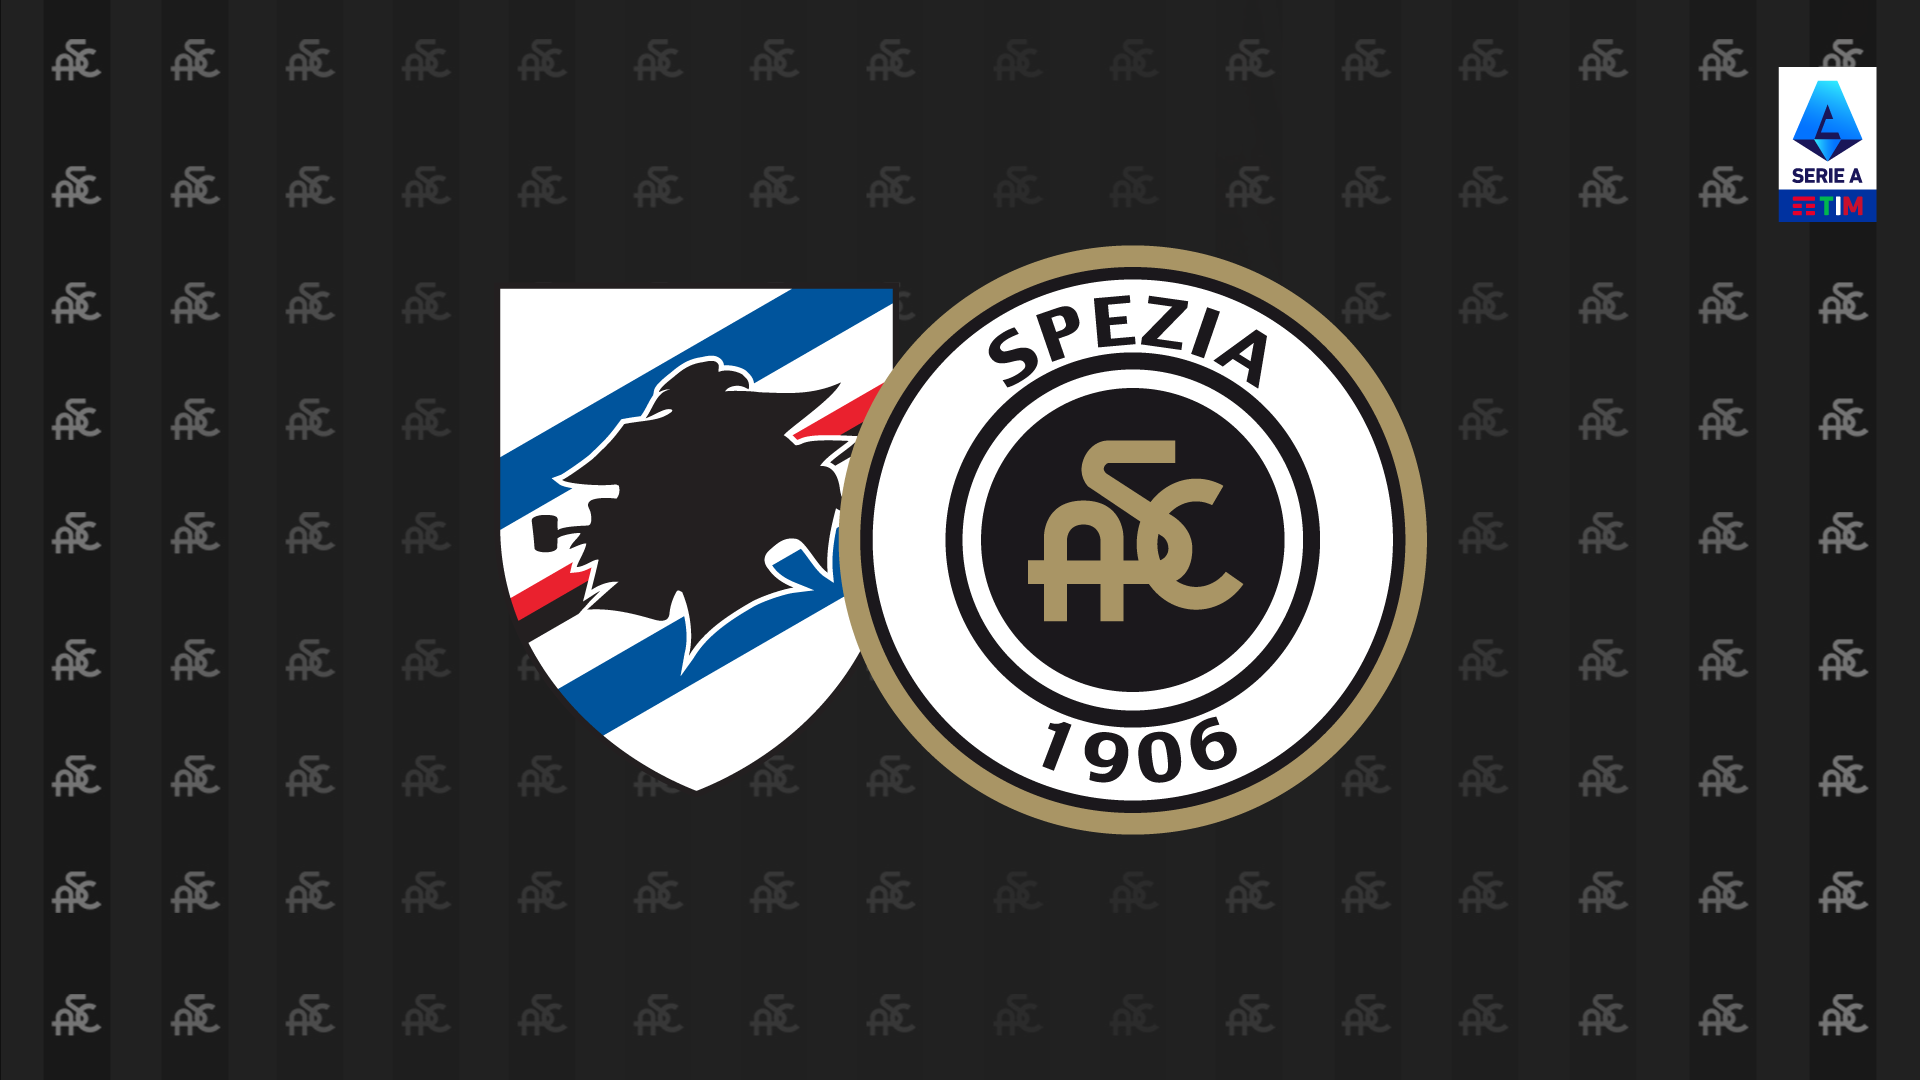 Sampdoria-Spezia: presale available on TicketOne